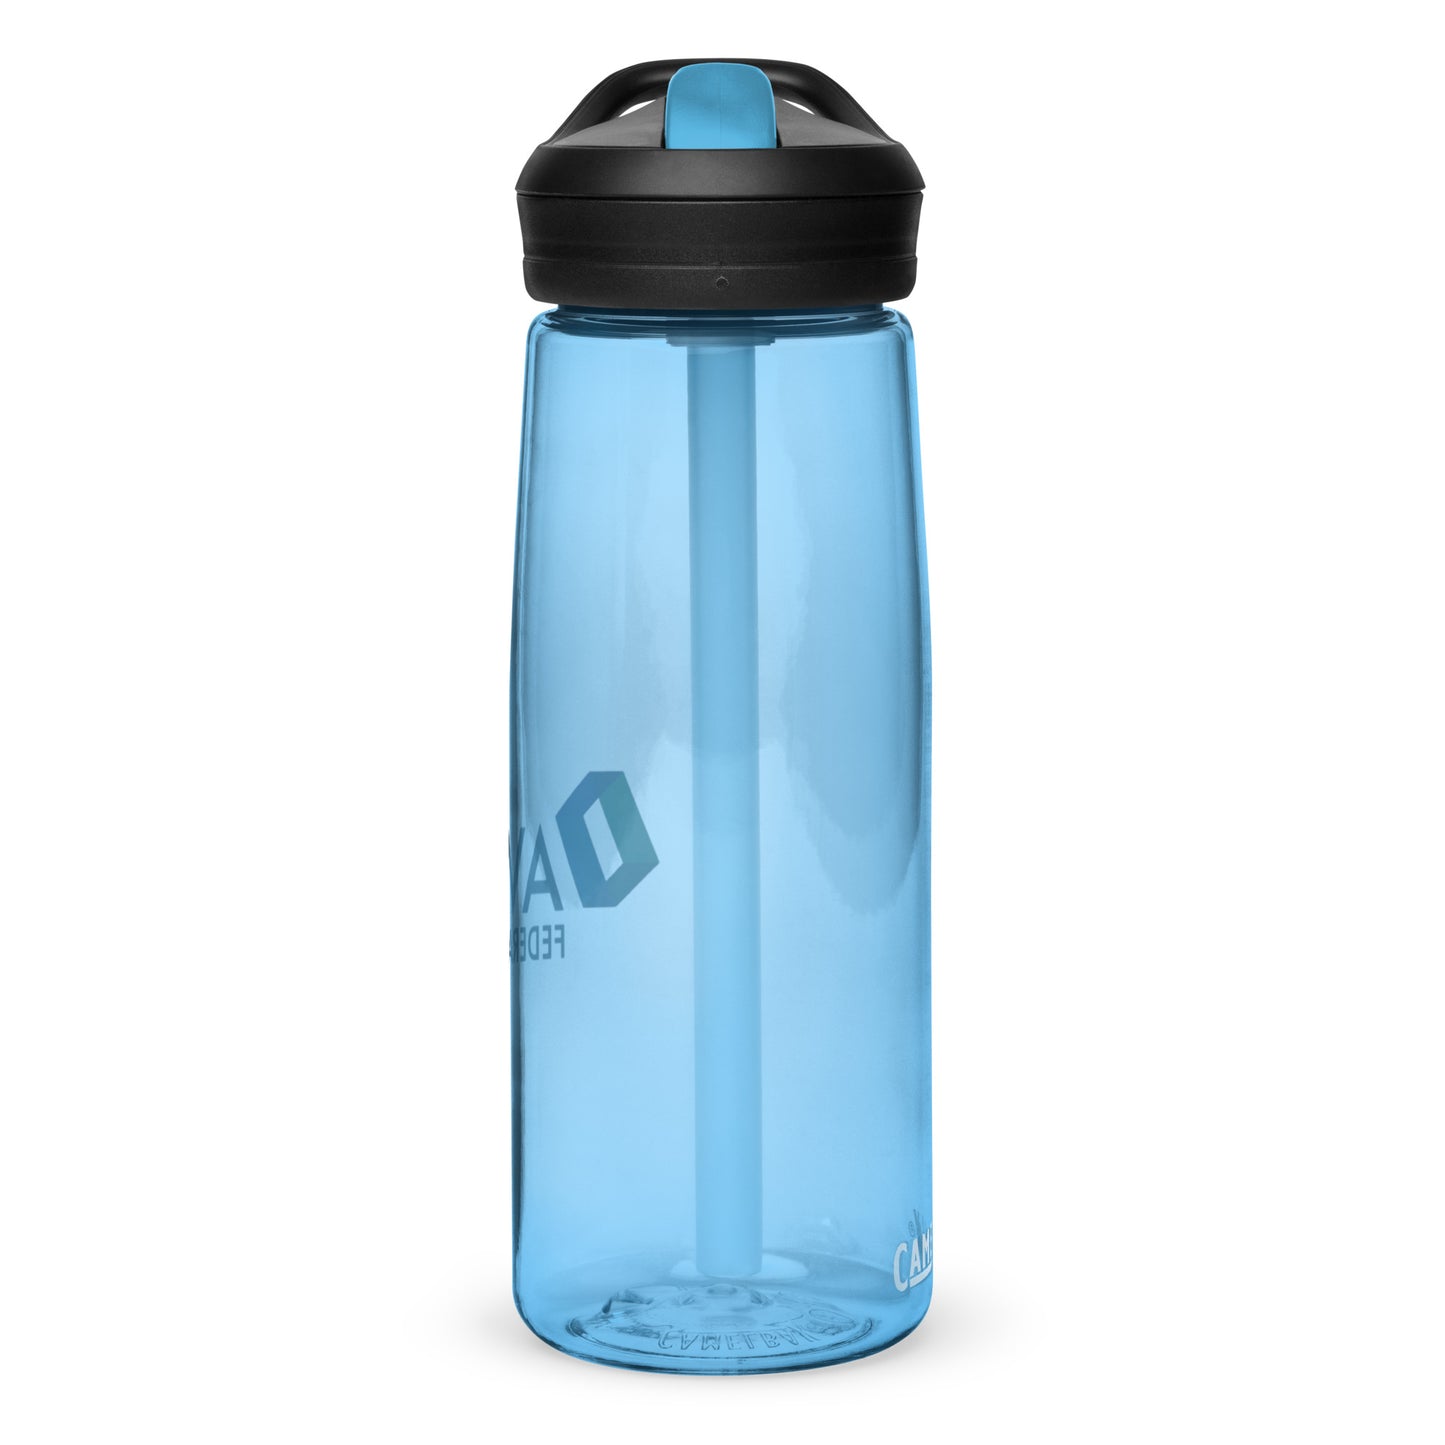 AVASO Sports water bottle